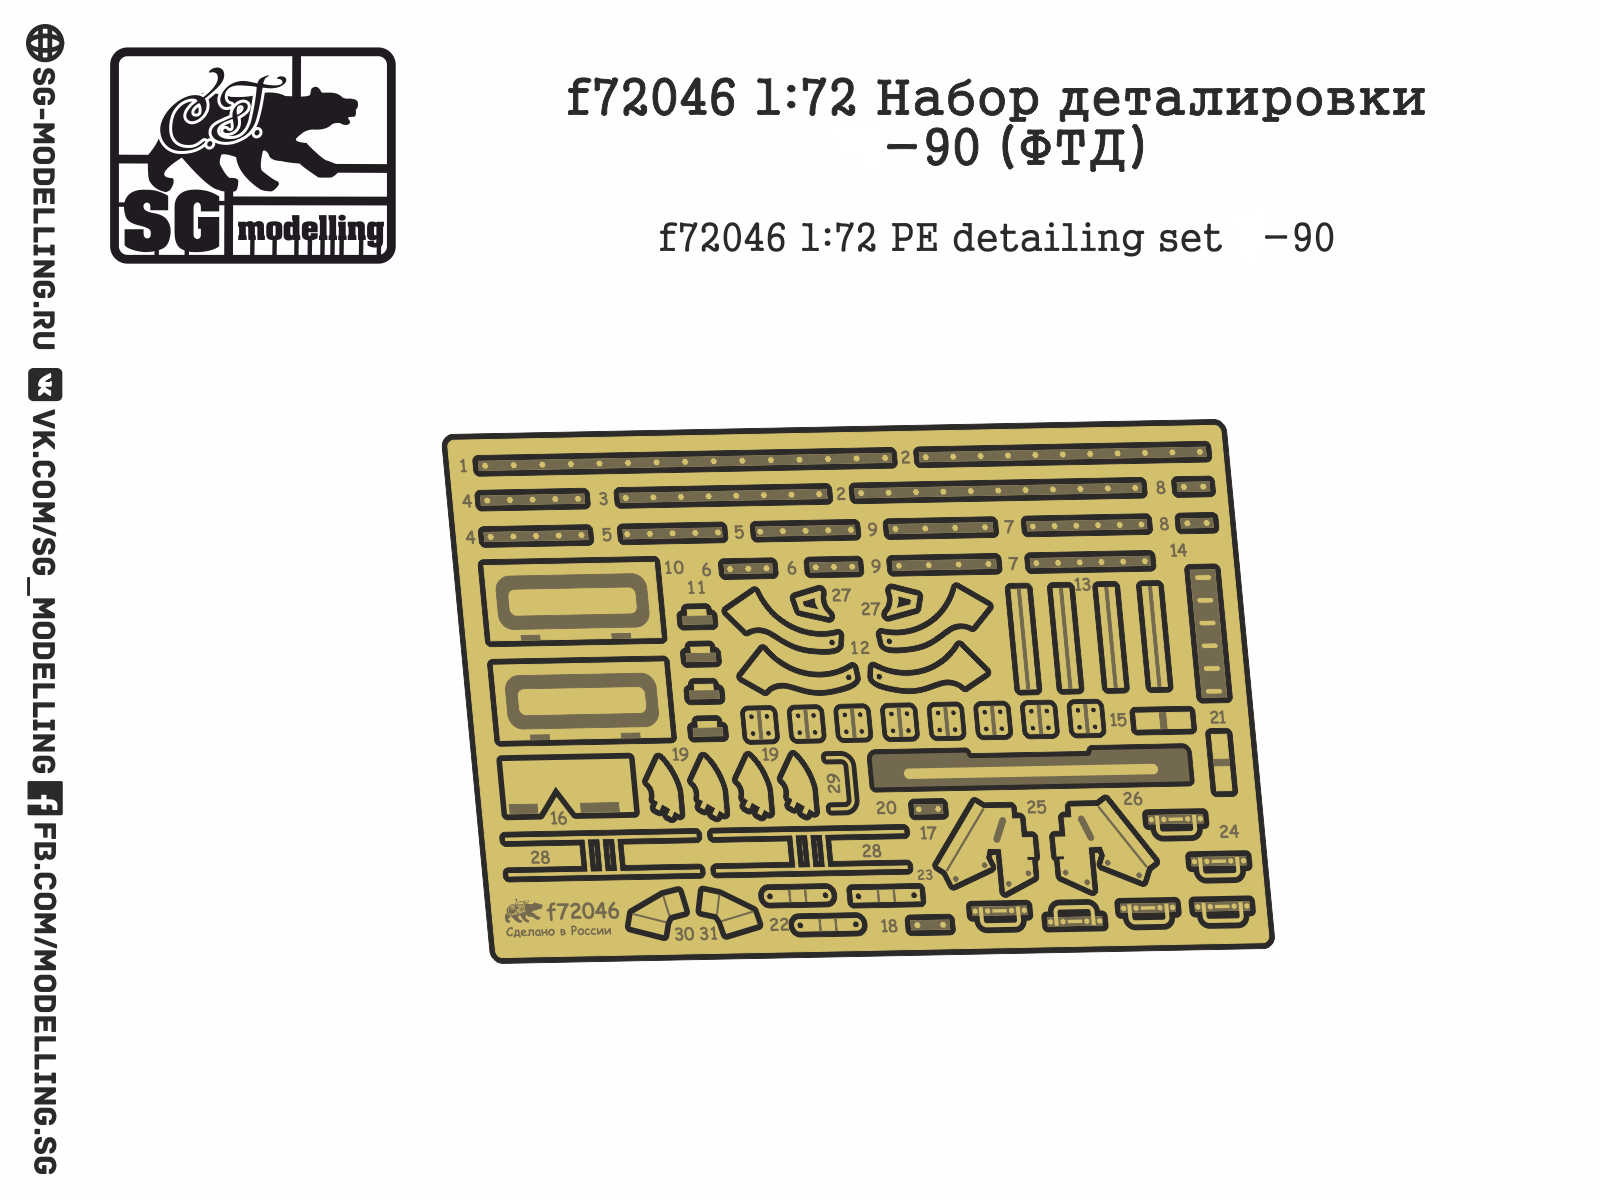 f72046  фототравление  Набор деталировки Танк-90  (1:72)